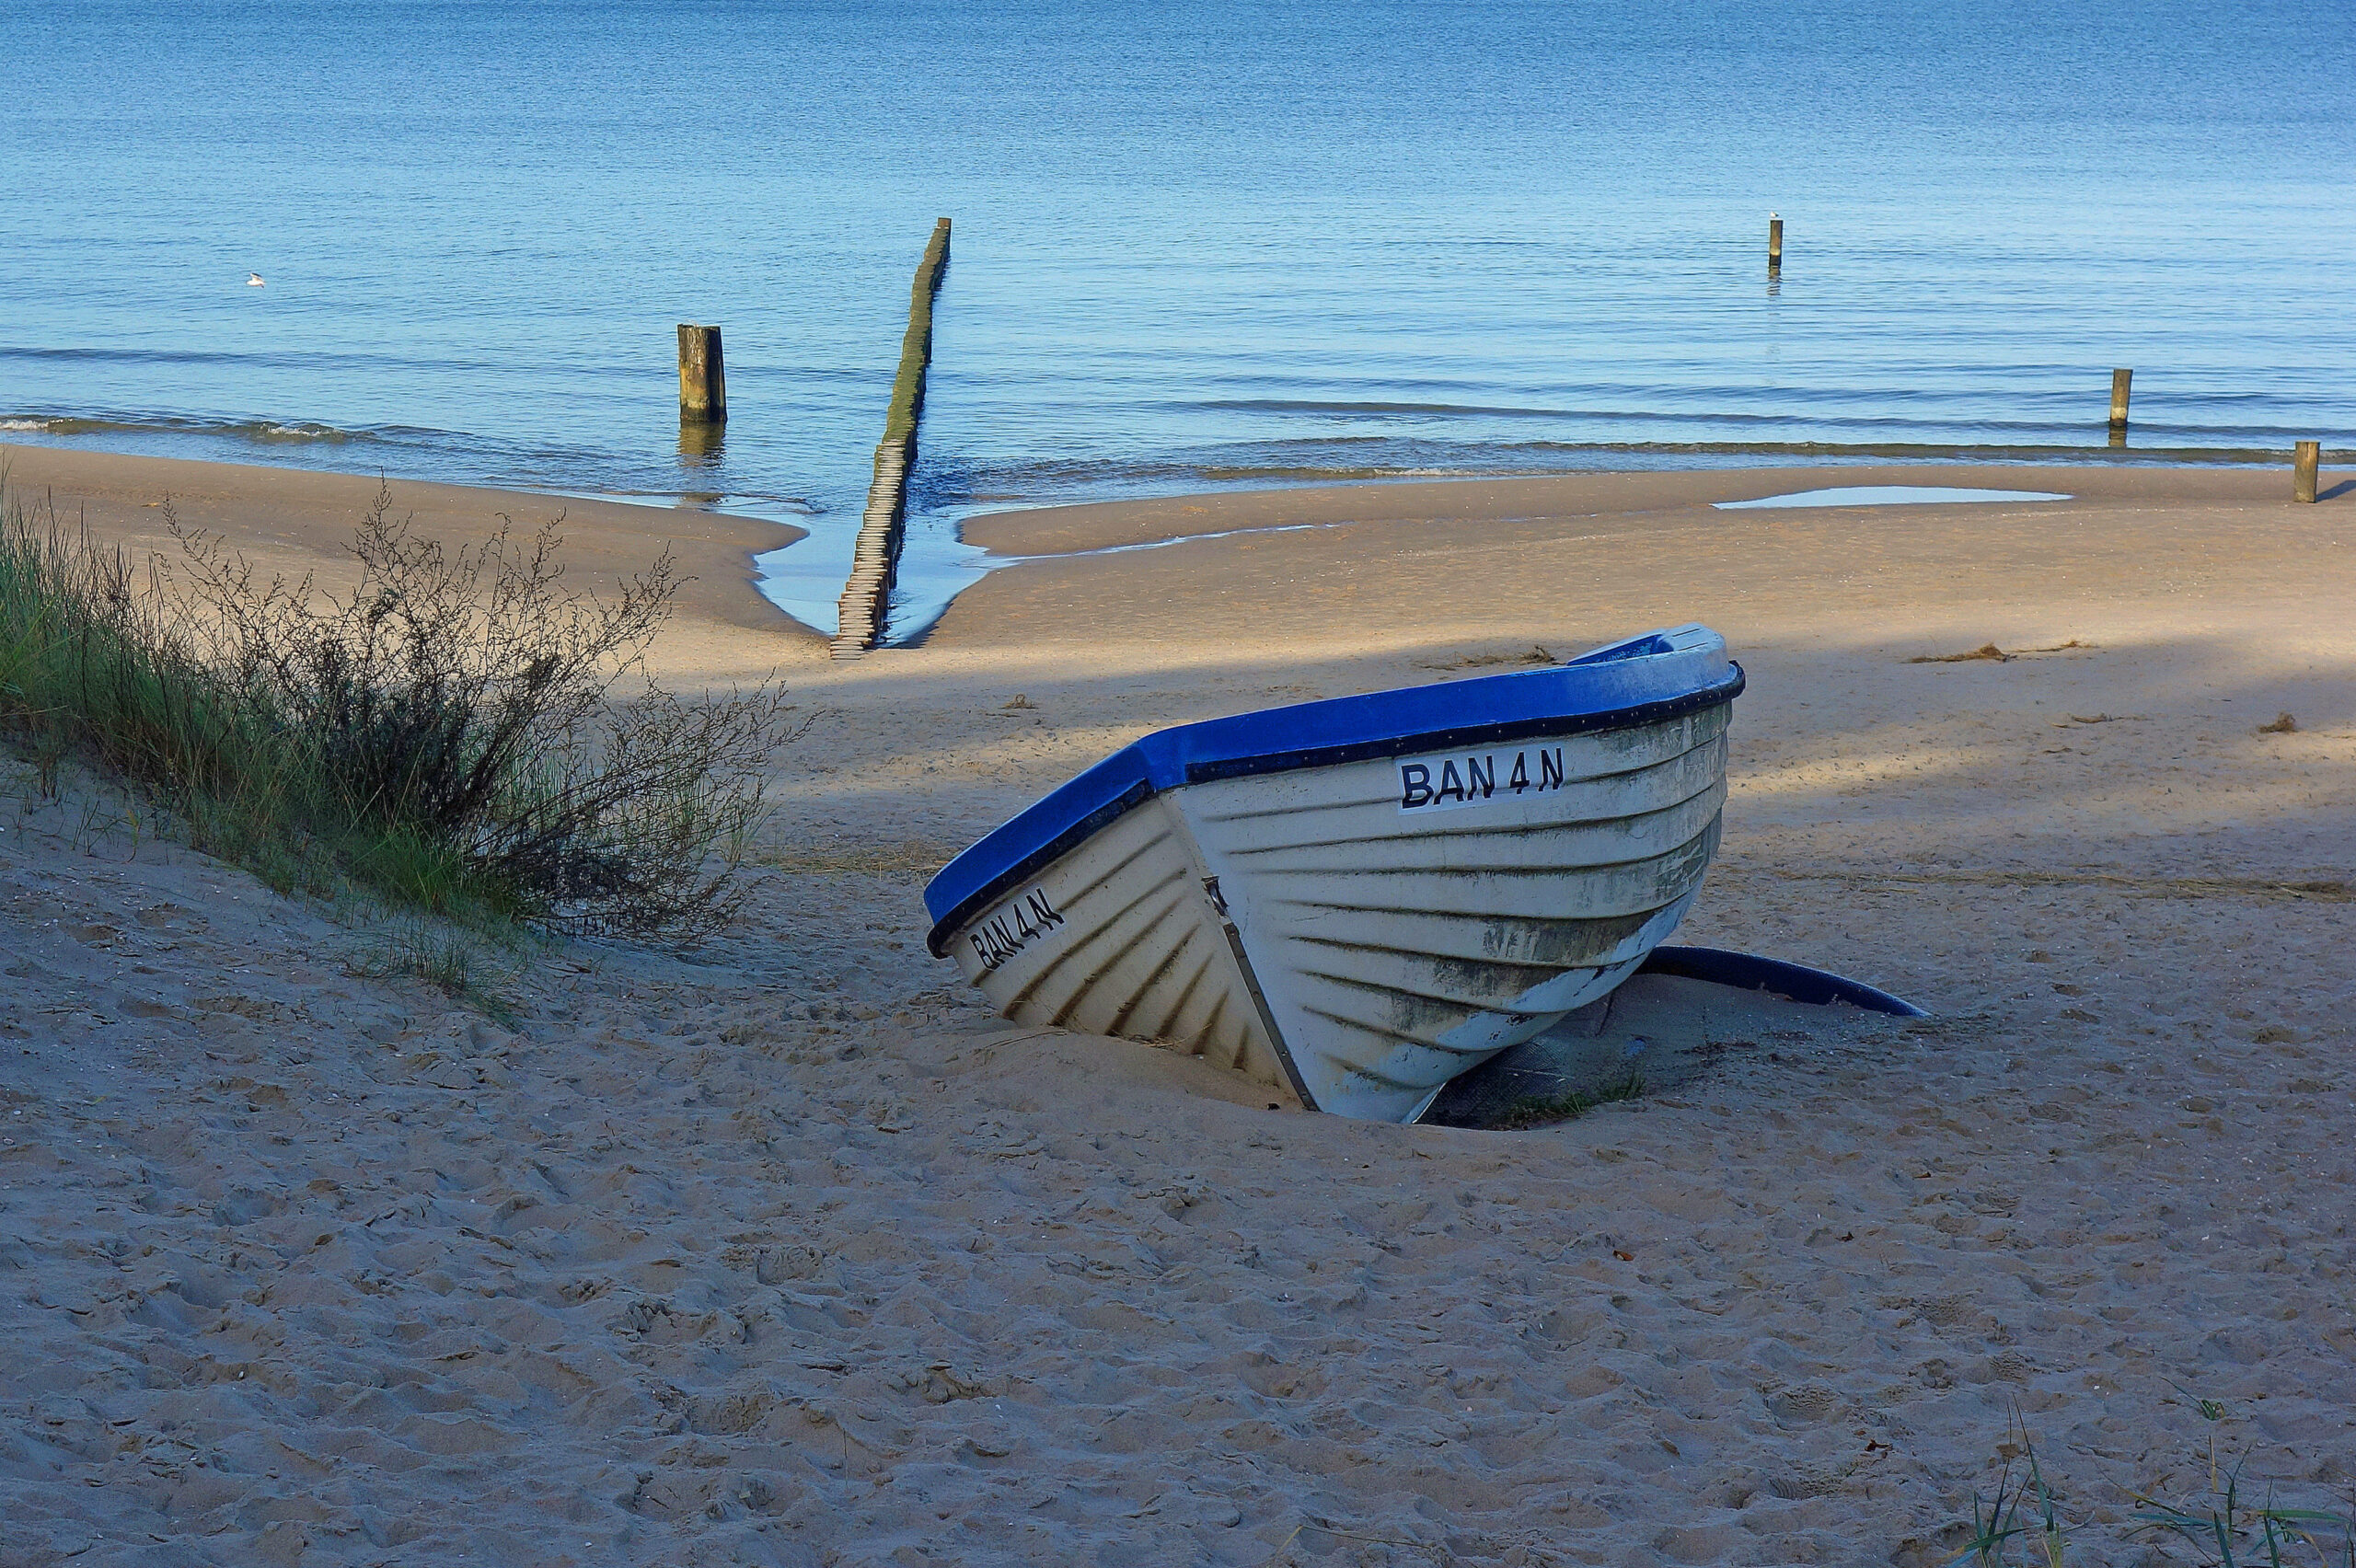 Mit kleinen Booten, auf einer Luftmatratze oder schwimmend versuchten Menschen über die Ostsee zu fliehen.